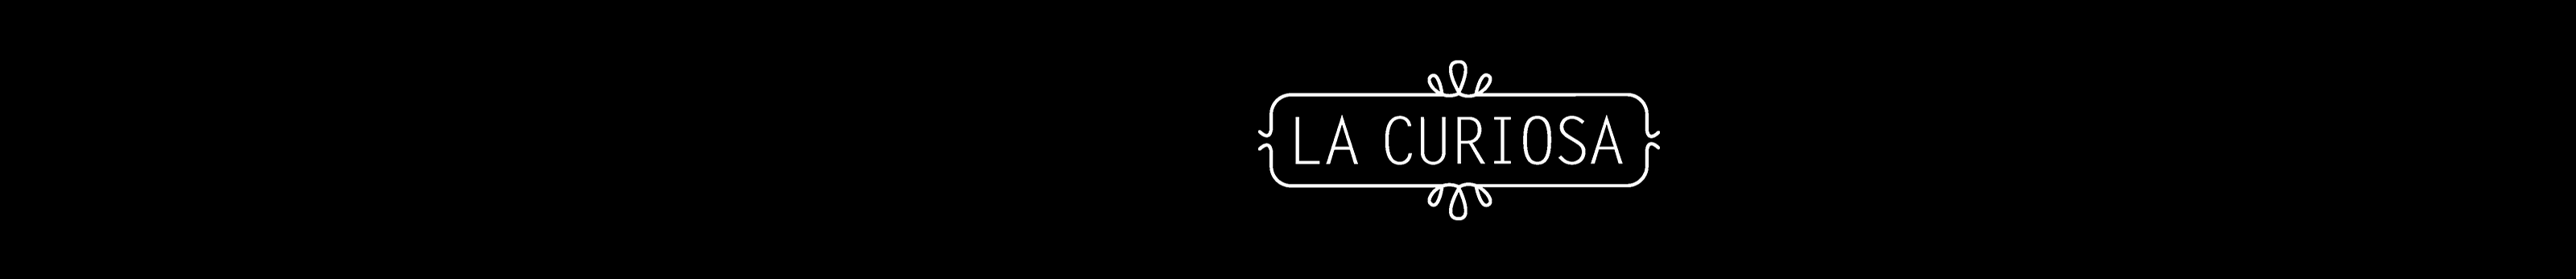 La Curiosa .'s profile banner